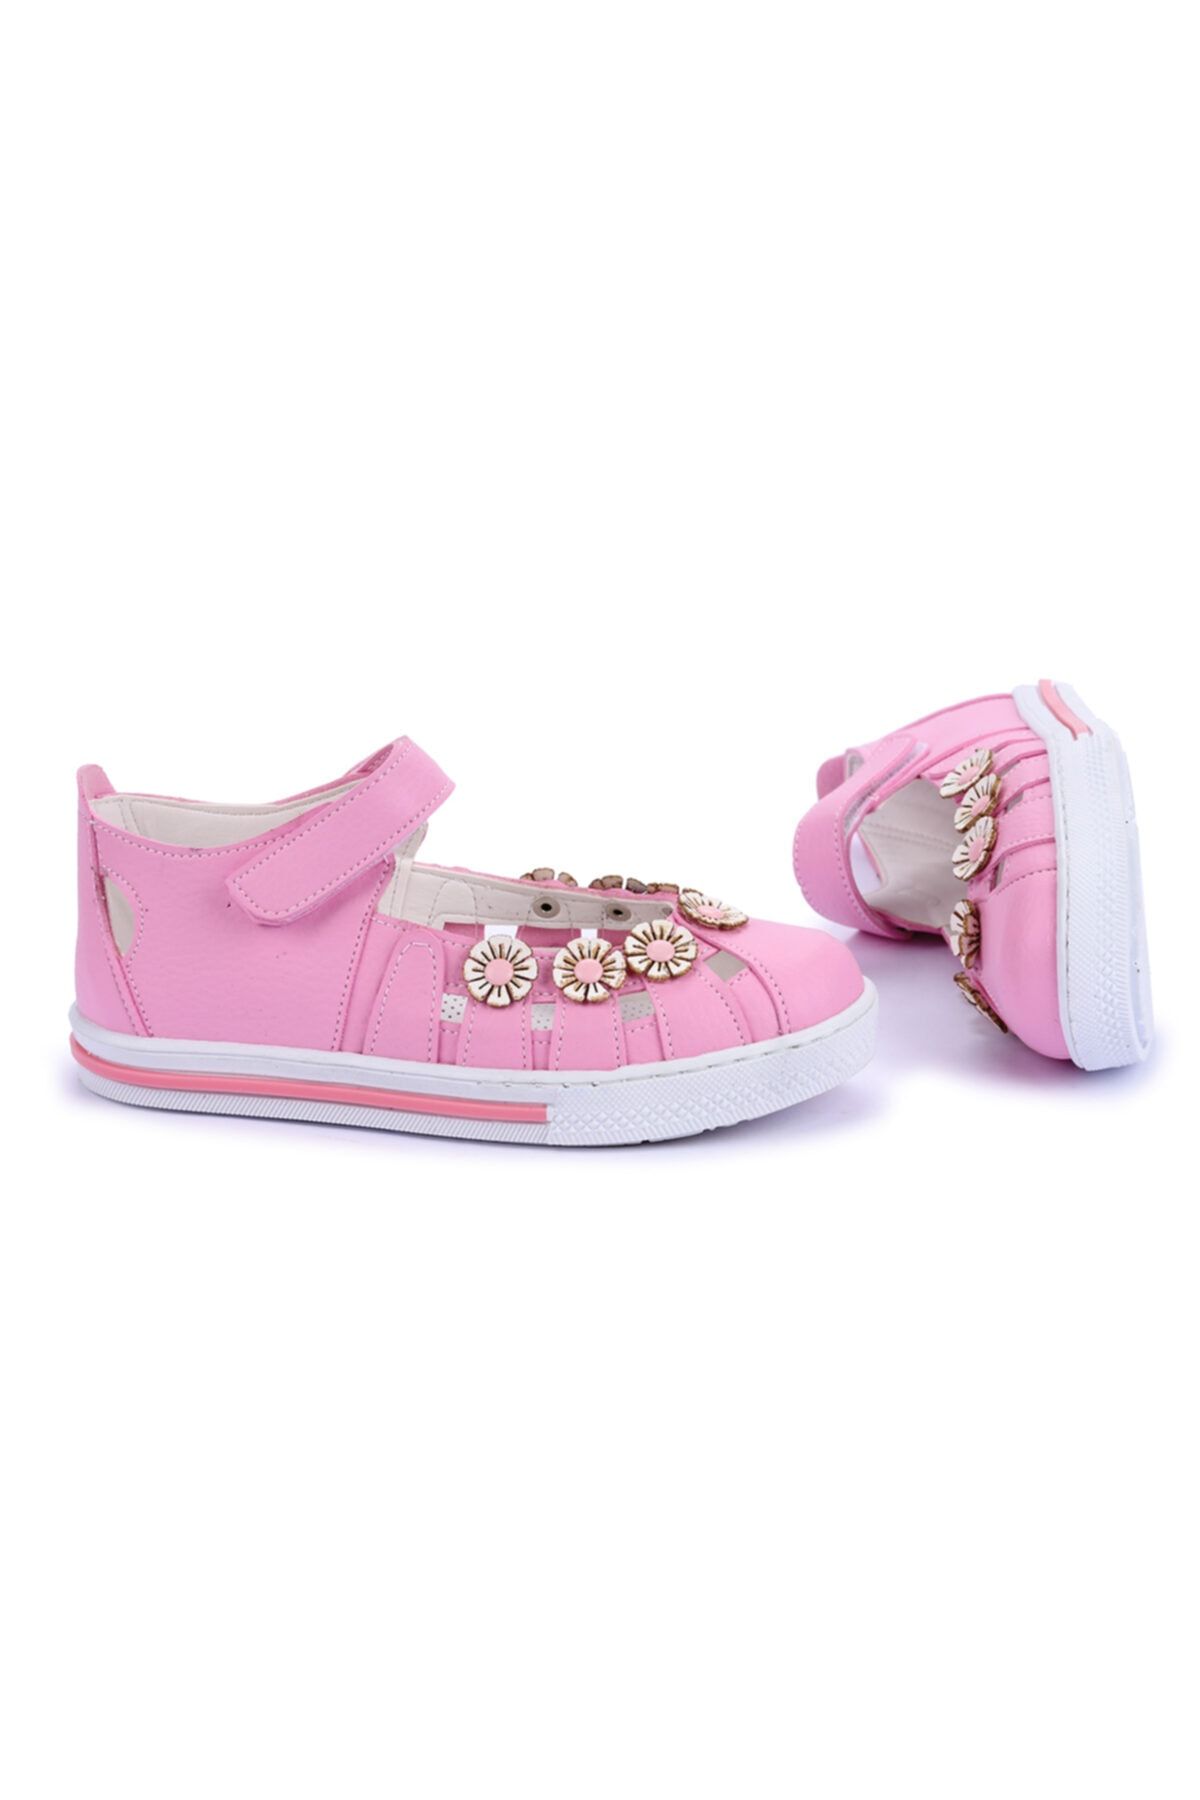 Kiko Kids Kız Çocuk Sandalet Ayakkabı